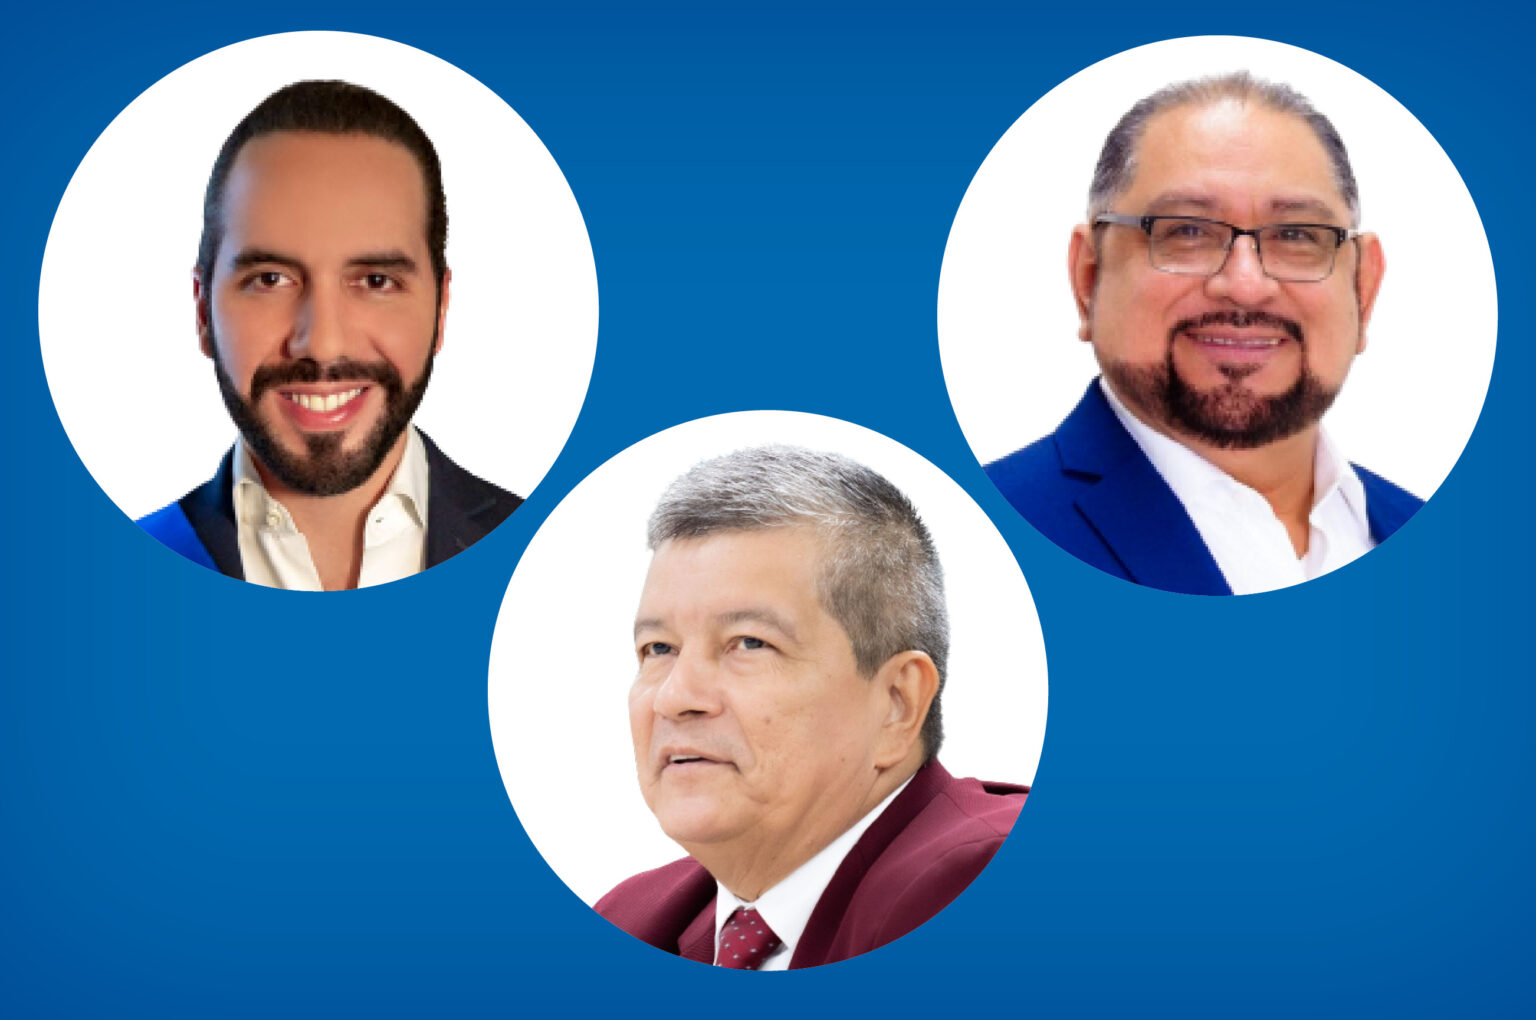 El Salvador’s presidential candidates